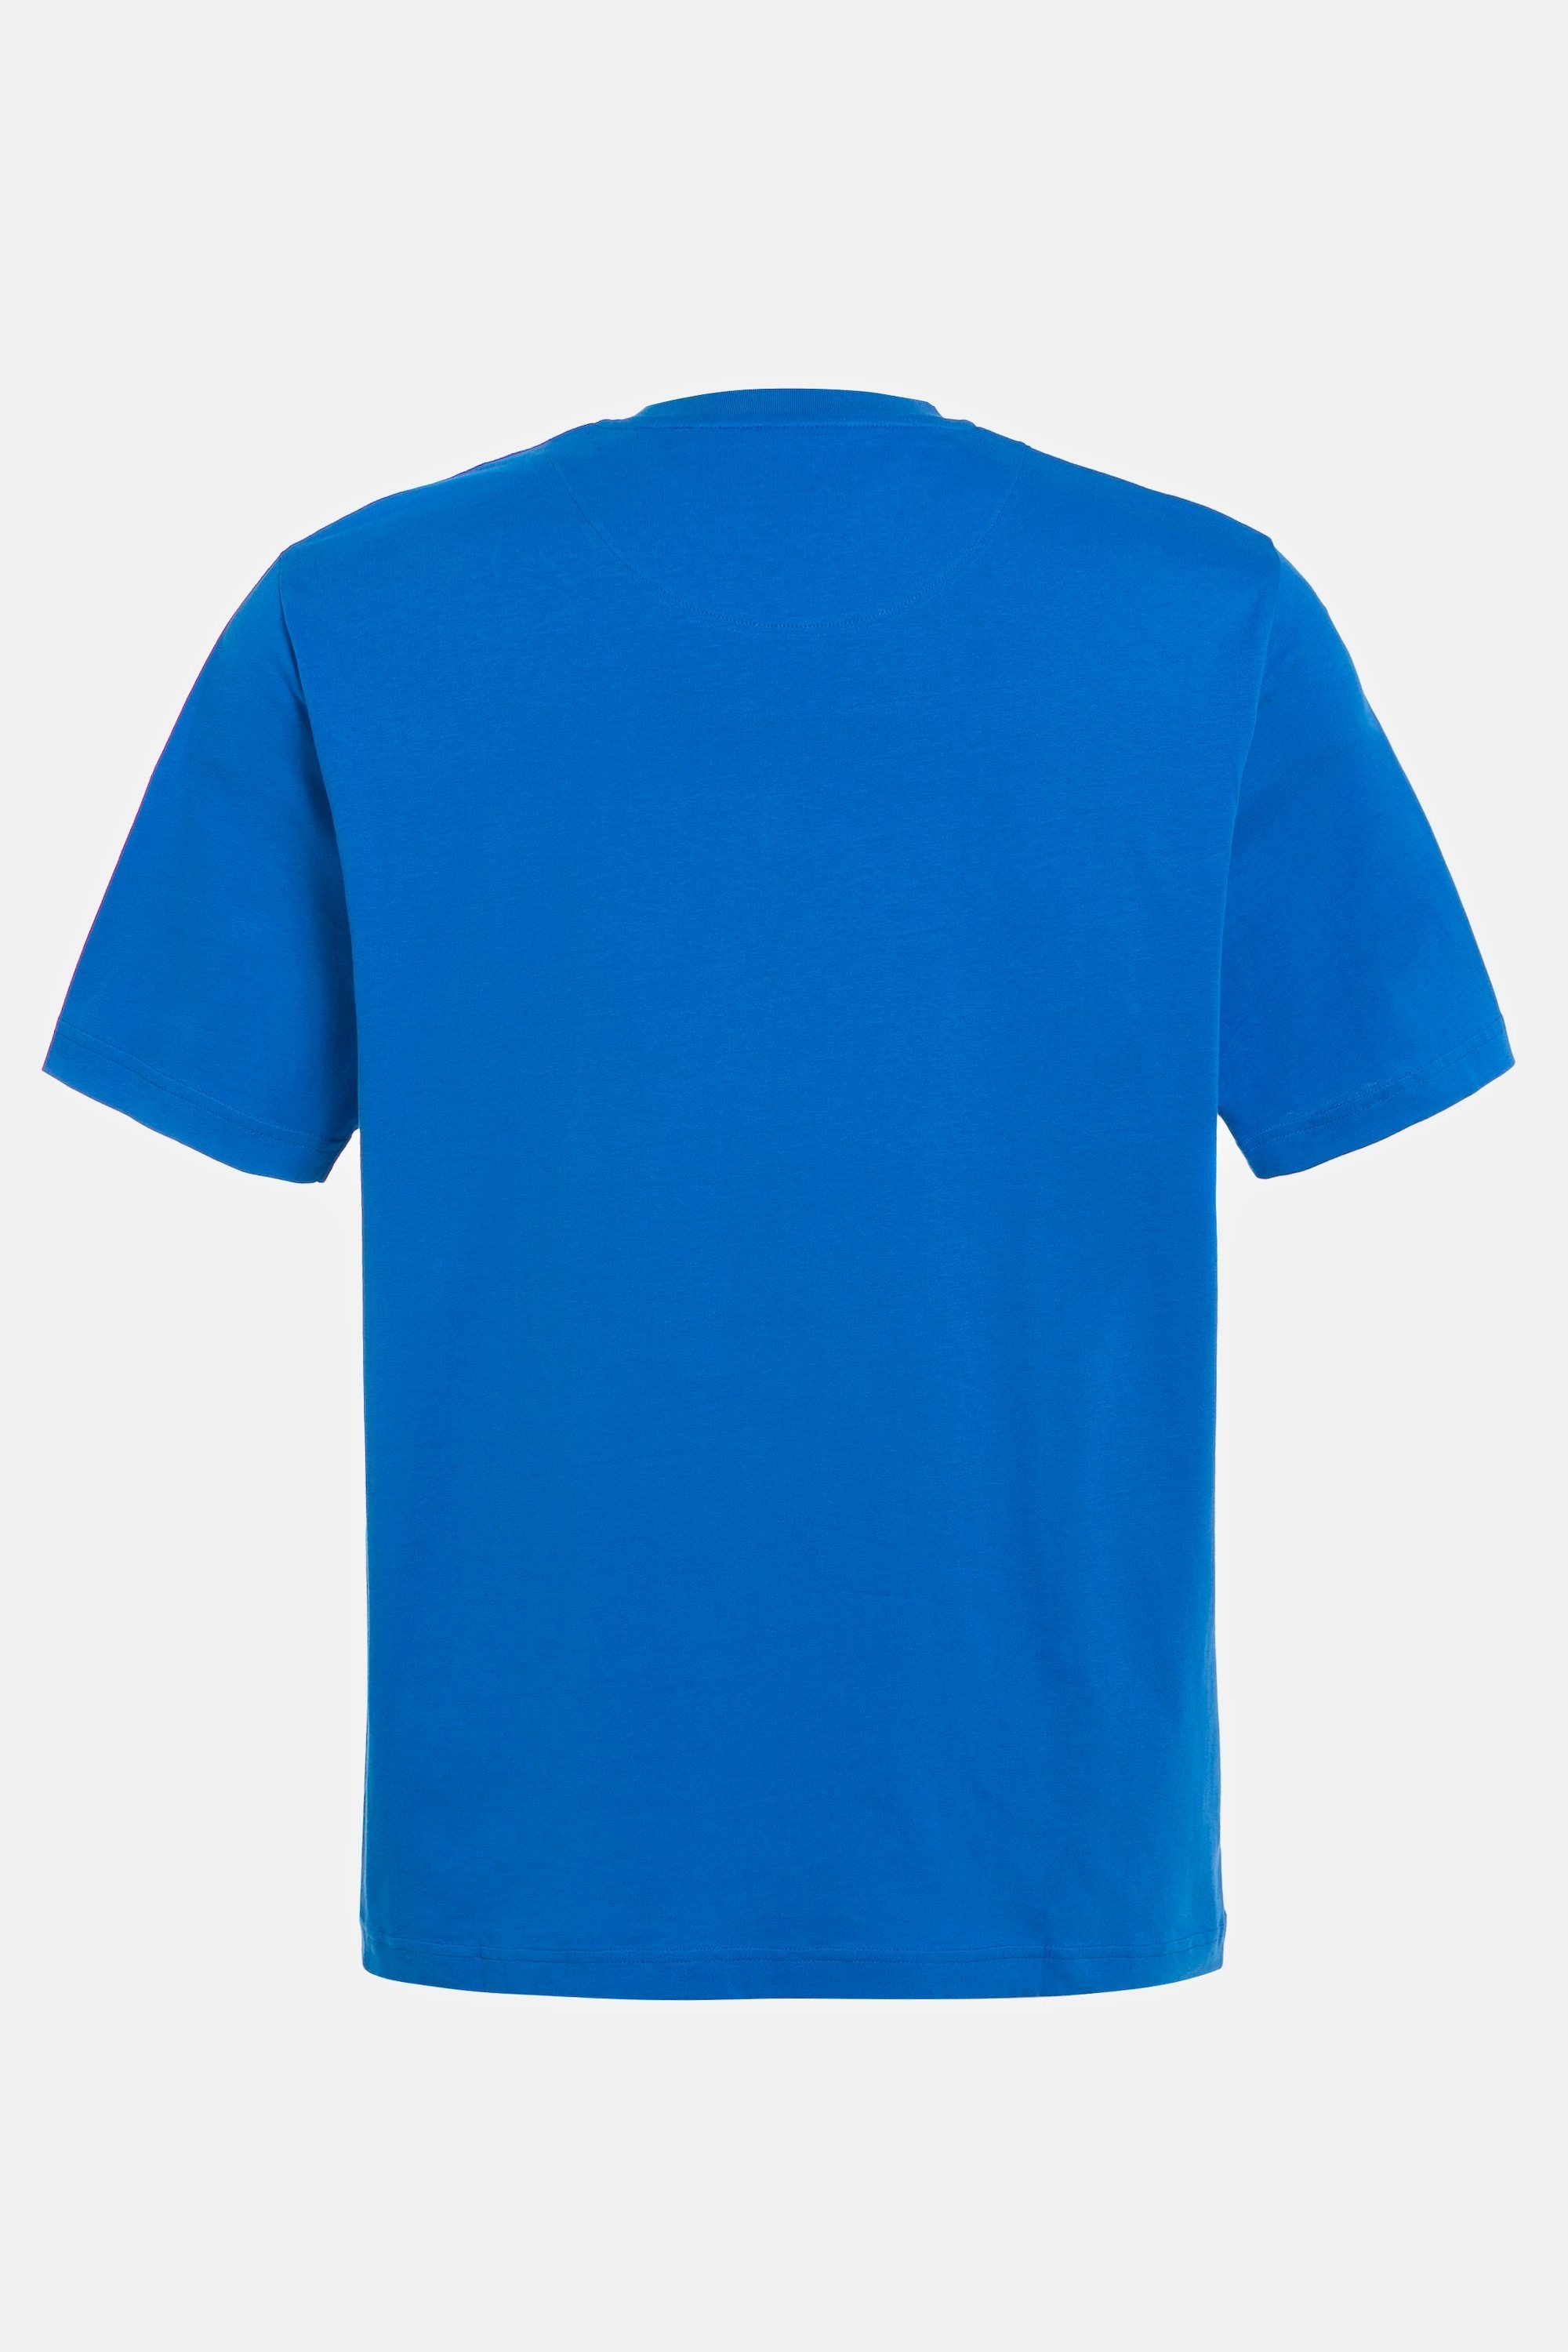 JP1880 T-Shirt T-Shirt Halbarm Brusttasche clematisblau